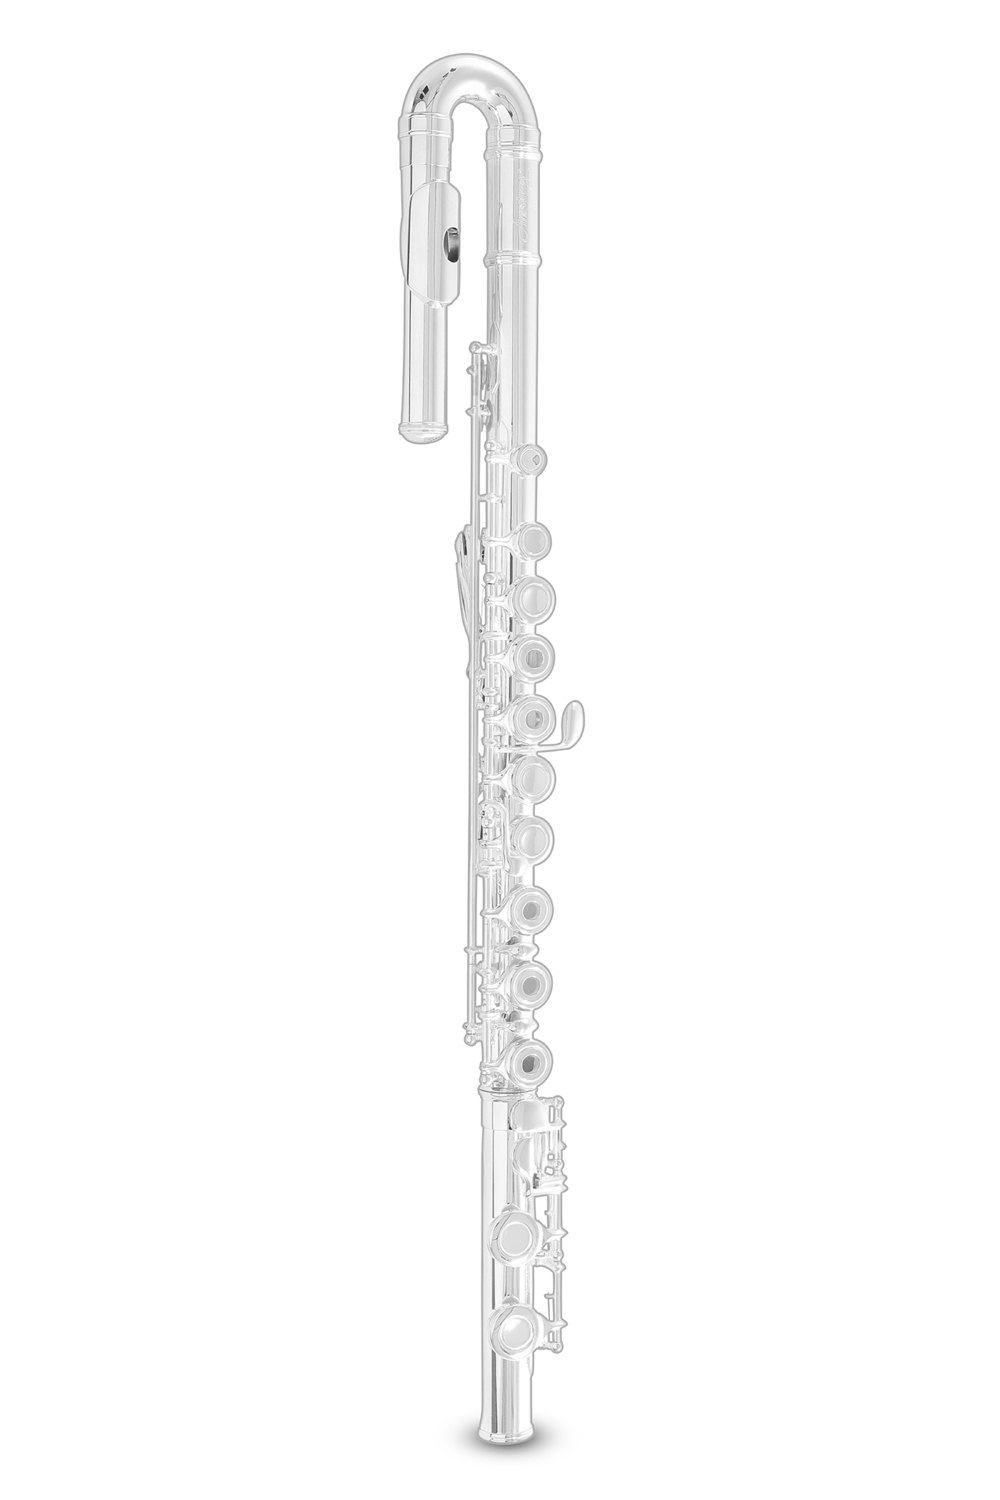 Flute FL650RI2 FL650RI2